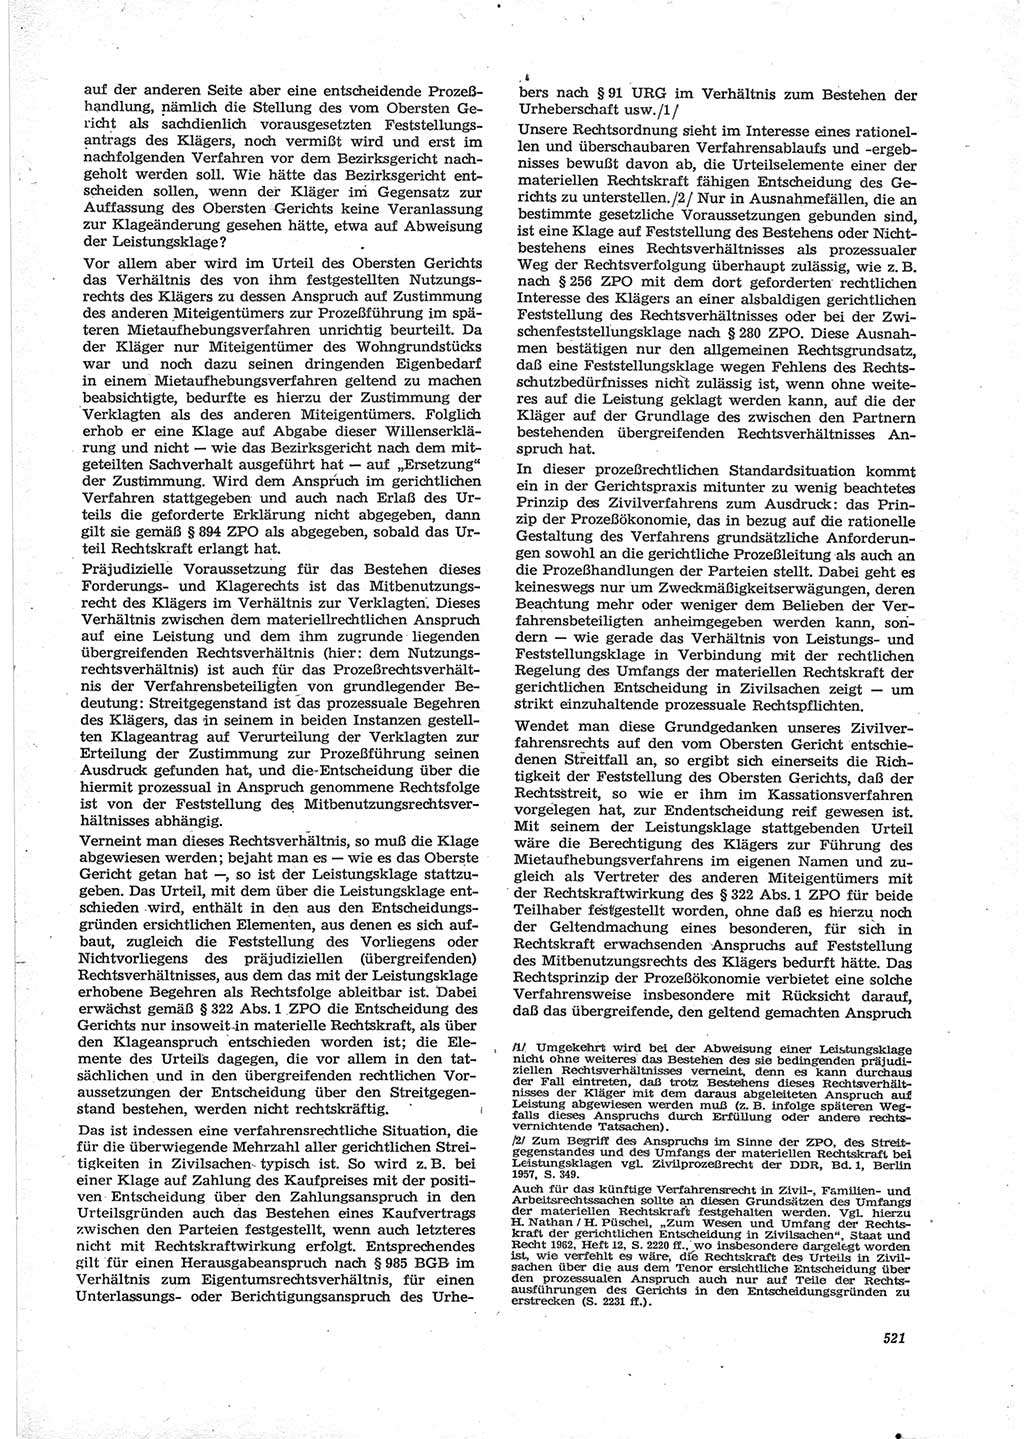 Neue Justiz (NJ), Zeitschrift für Recht und Rechtswissenschaft [Deutsche Demokratische Republik (DDR)], 28. Jahrgang 1974, Seite 521 (NJ DDR 1974, S. 521)